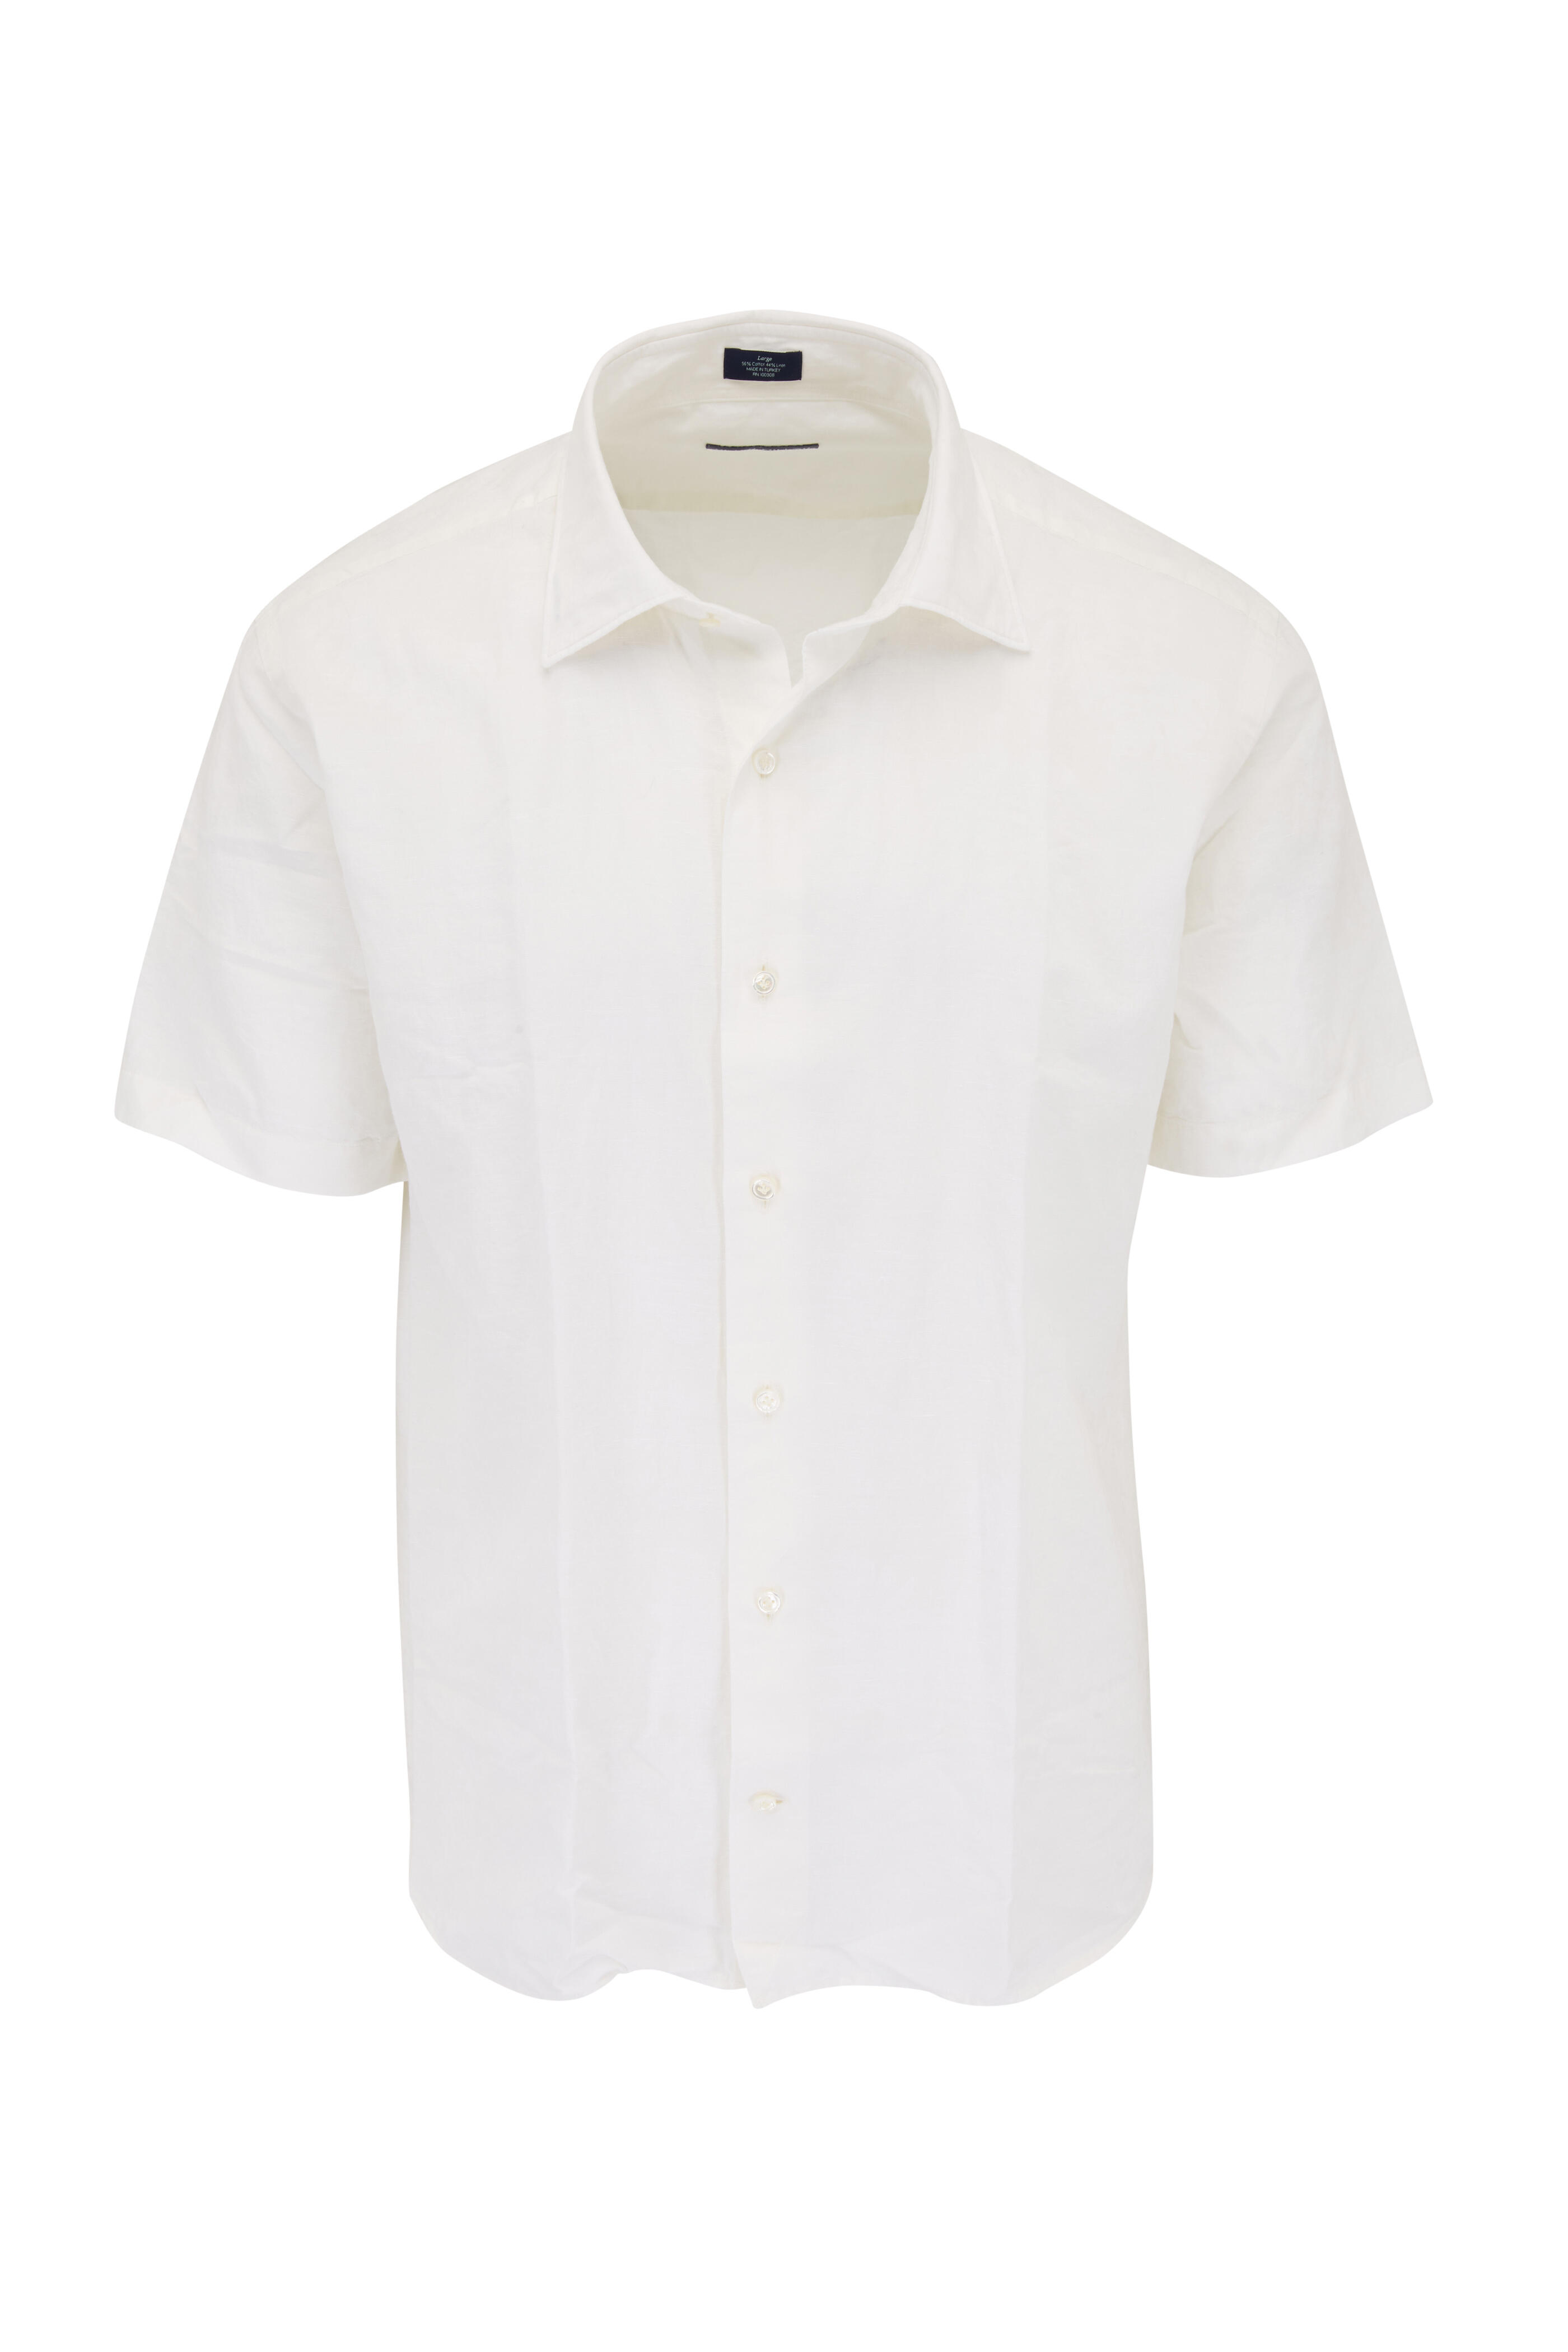 Peter Millar - White Coral Gull Cotton & Linen Sport Shirt